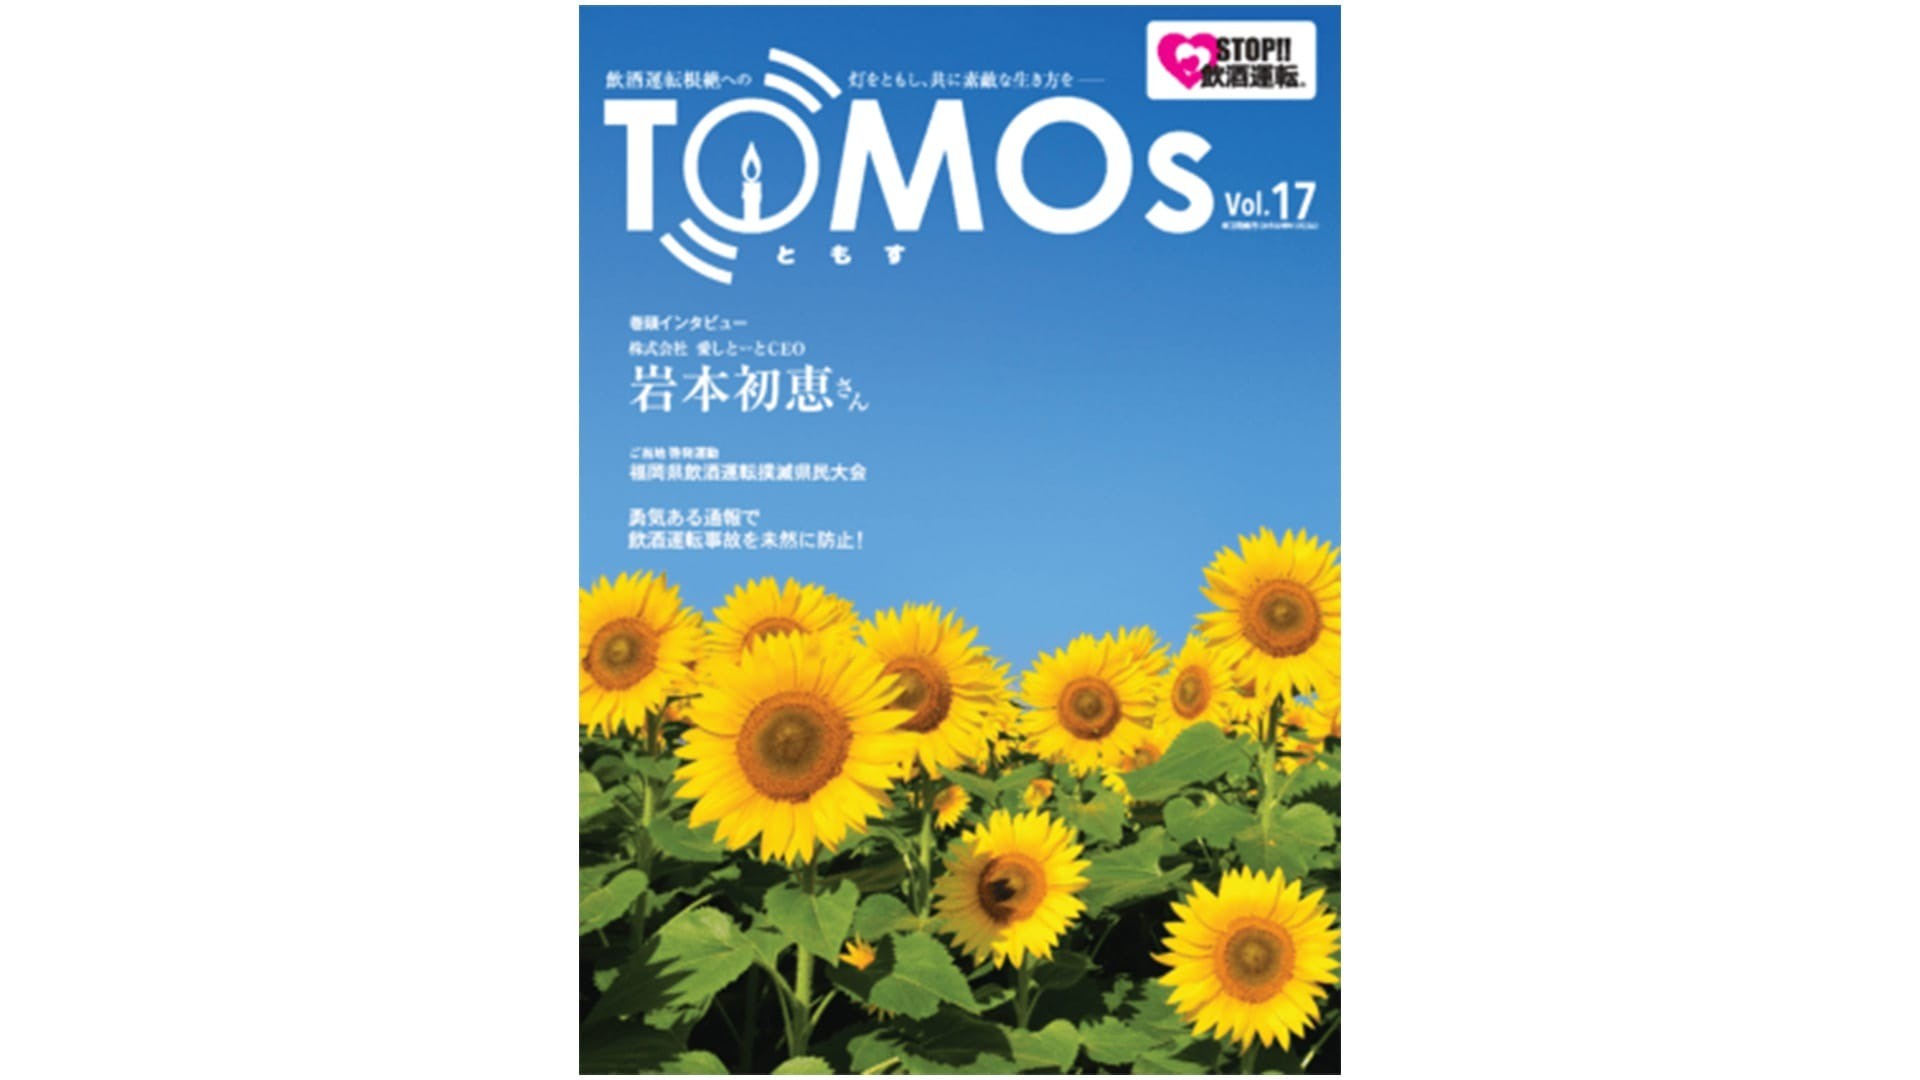 TOMOs vol.17 株式会社愛しとーとCEO 岩本初恵さんインタビュー